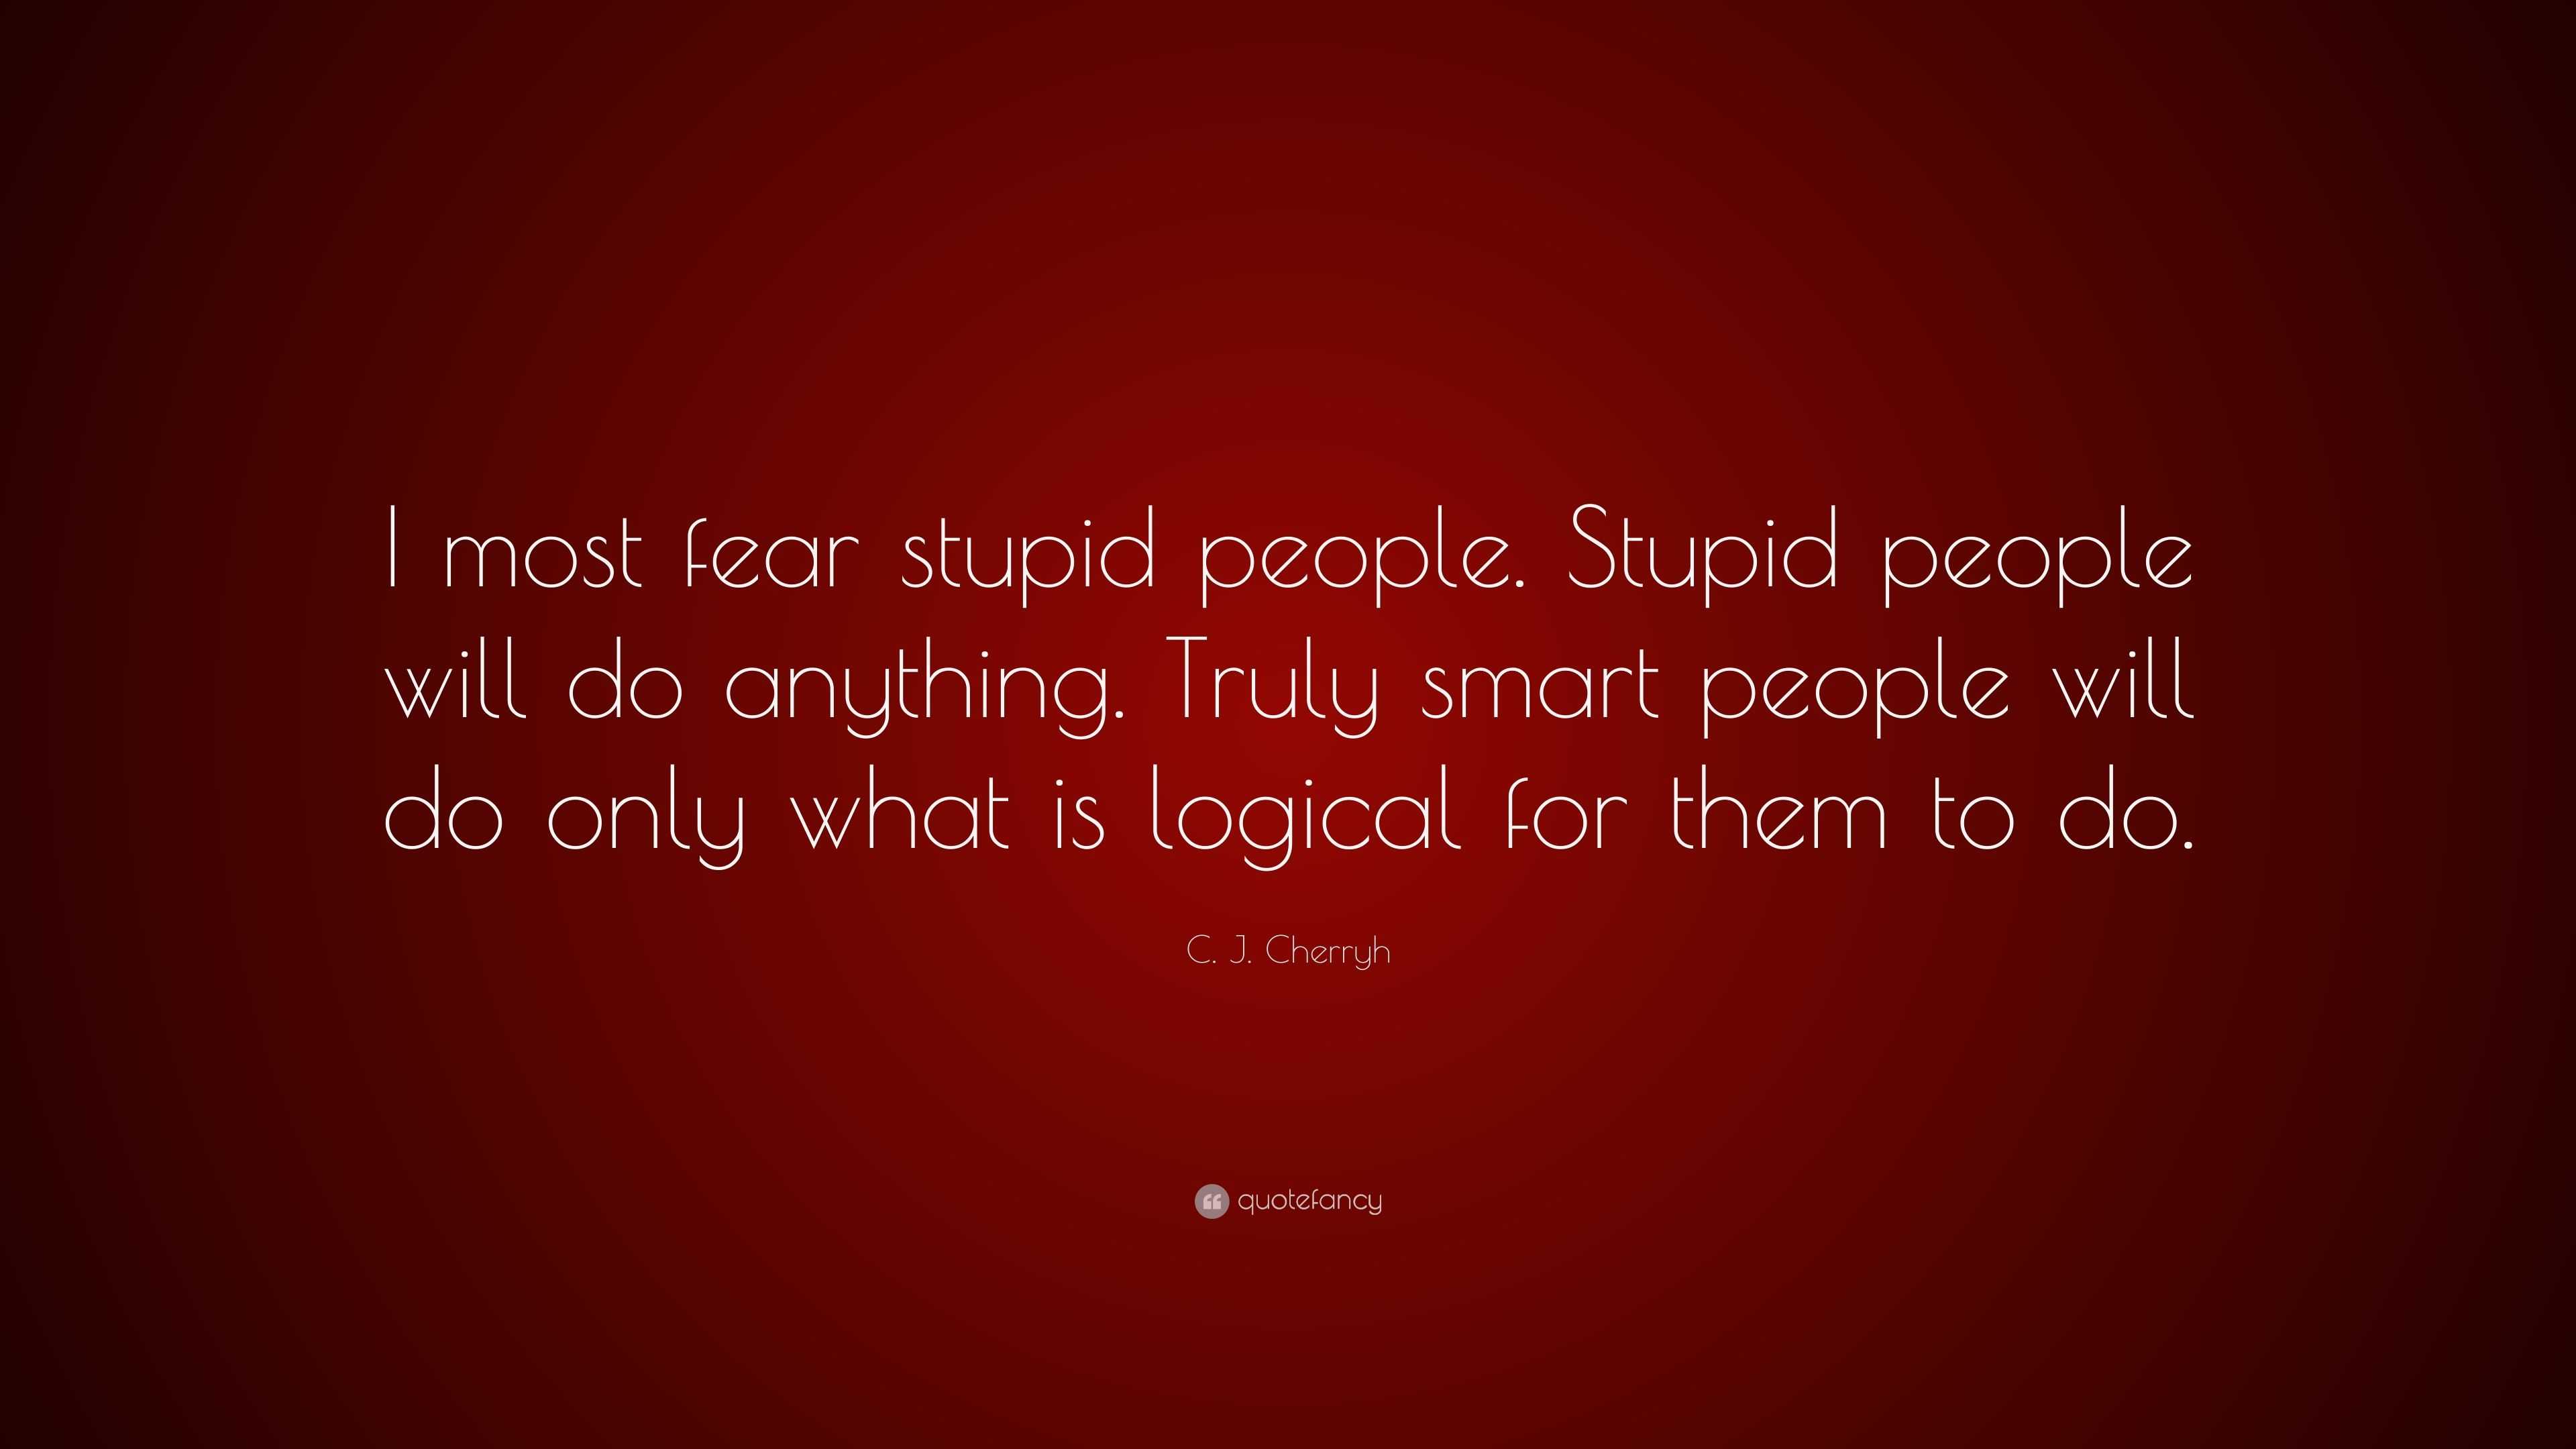 Stupid for stupid people quotes Stupid People